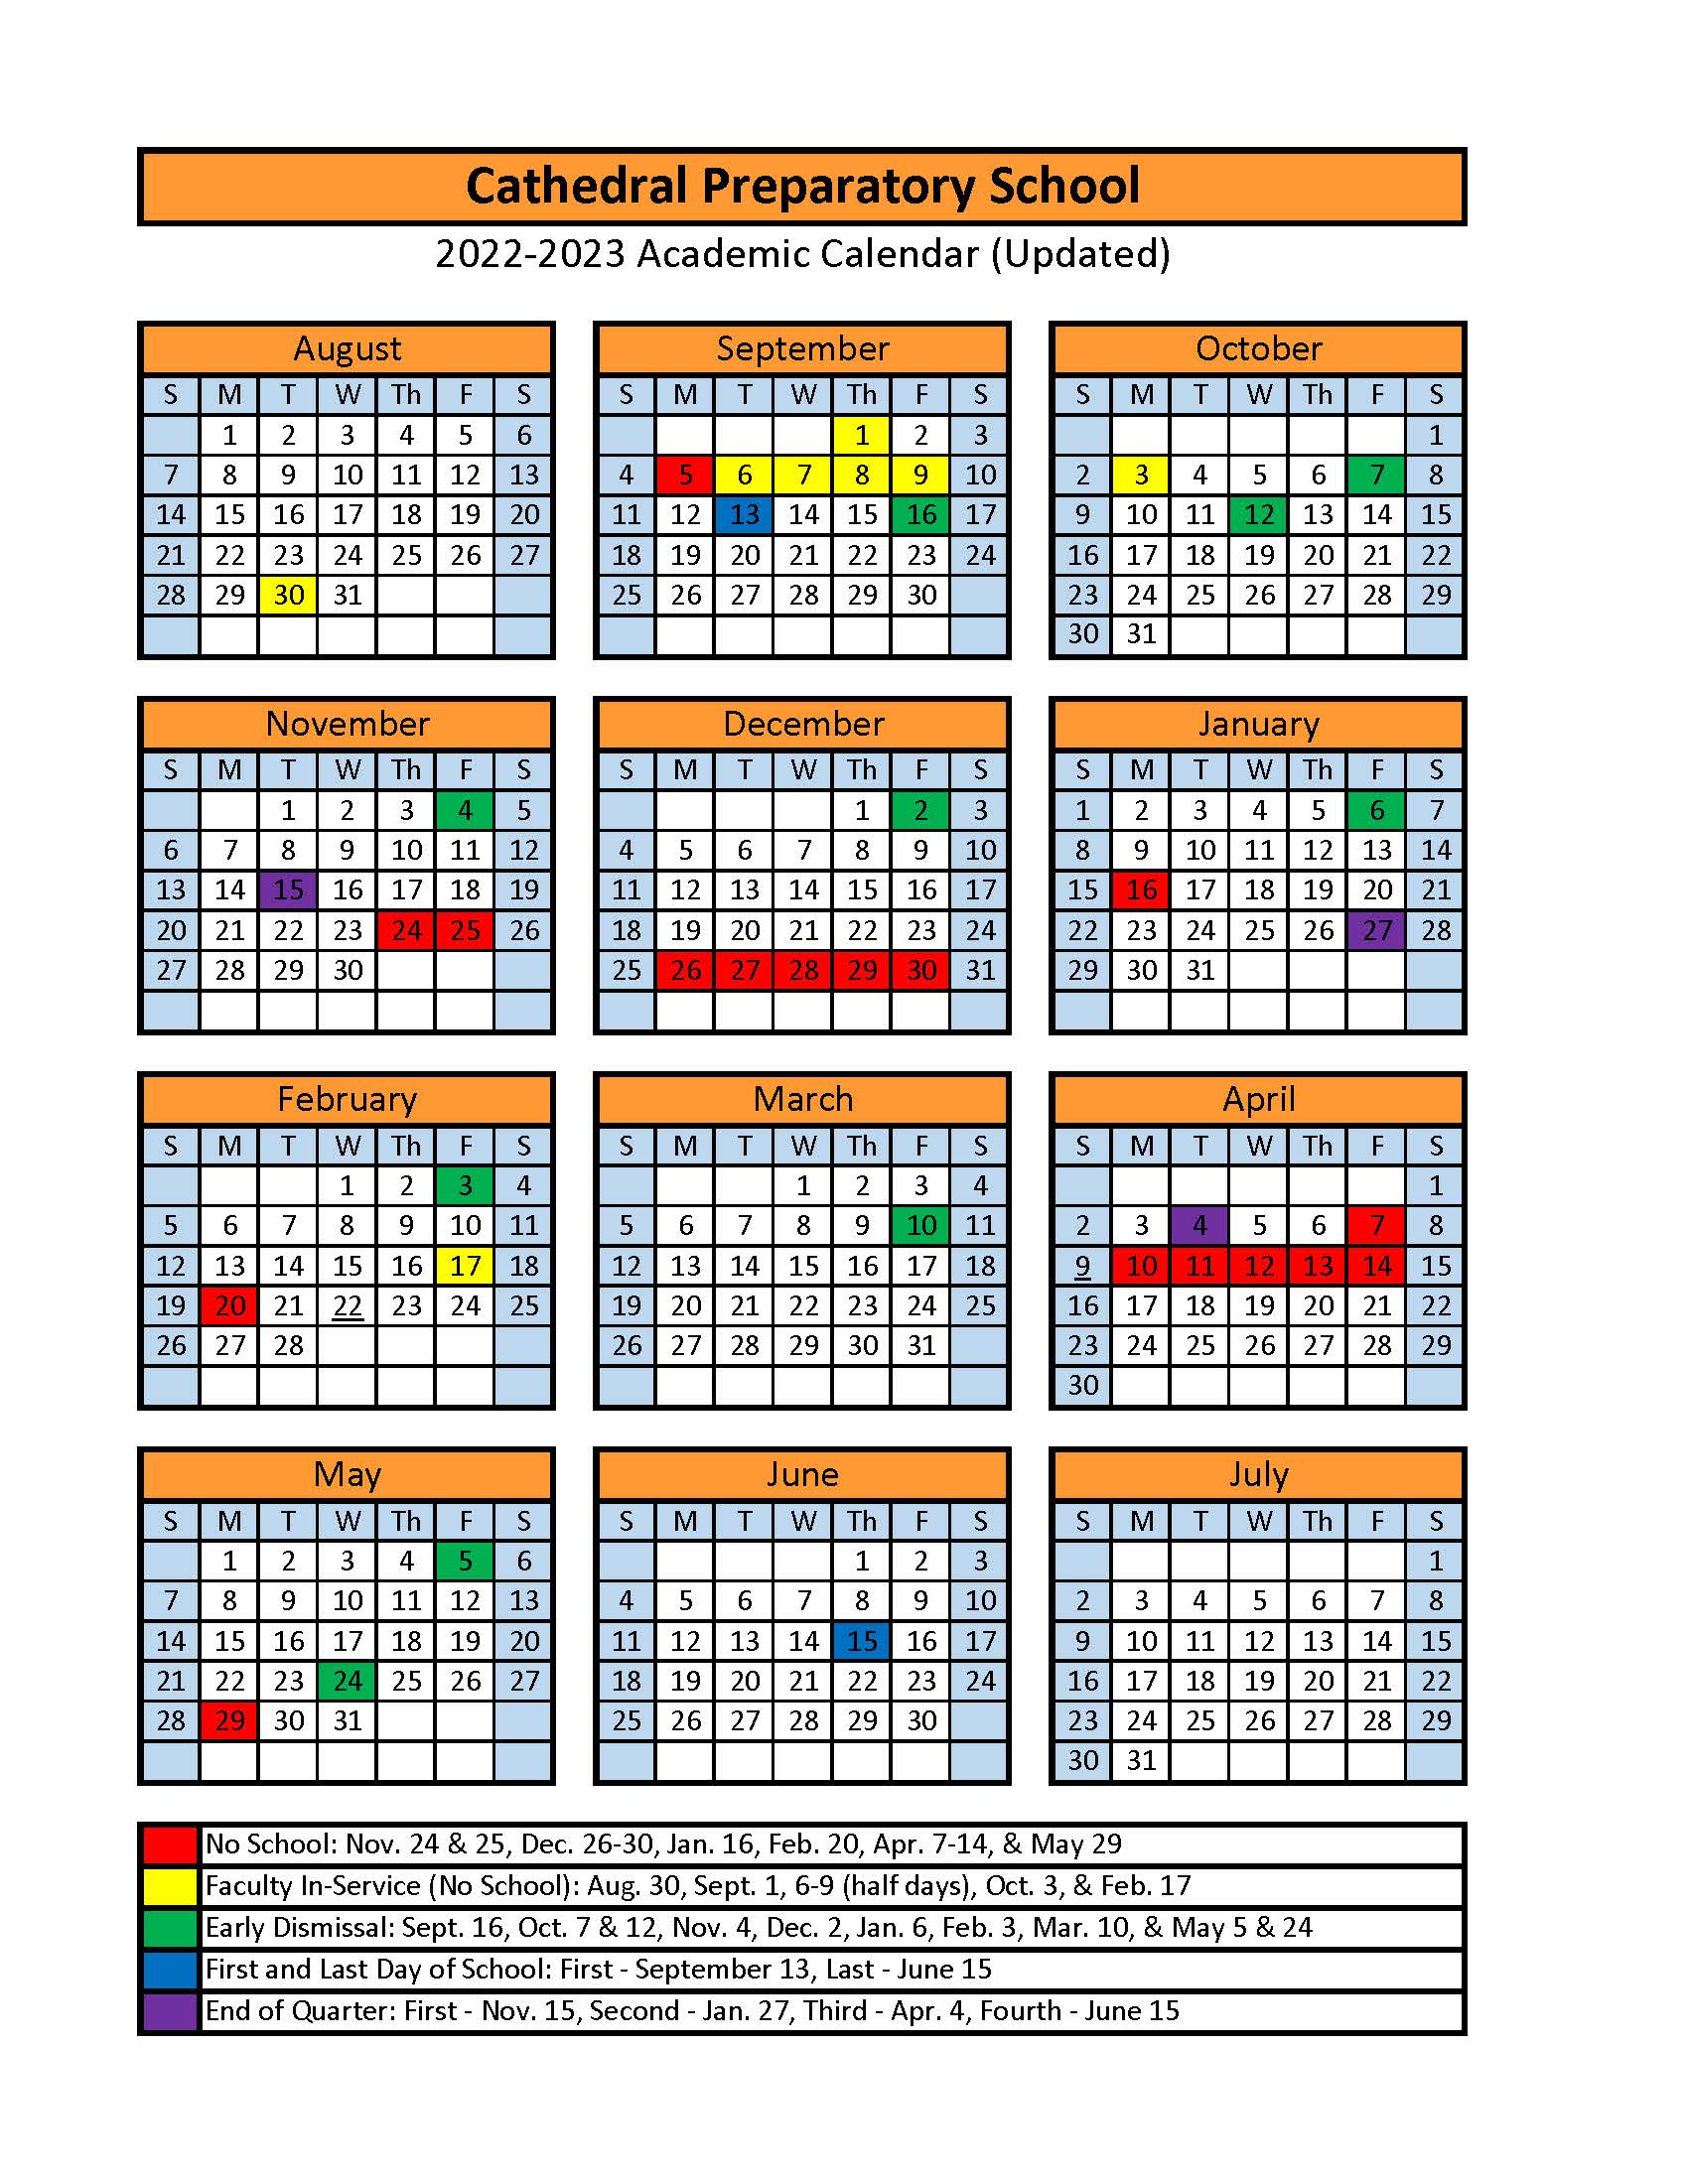 school-calendar-cathedral-preparatory-school